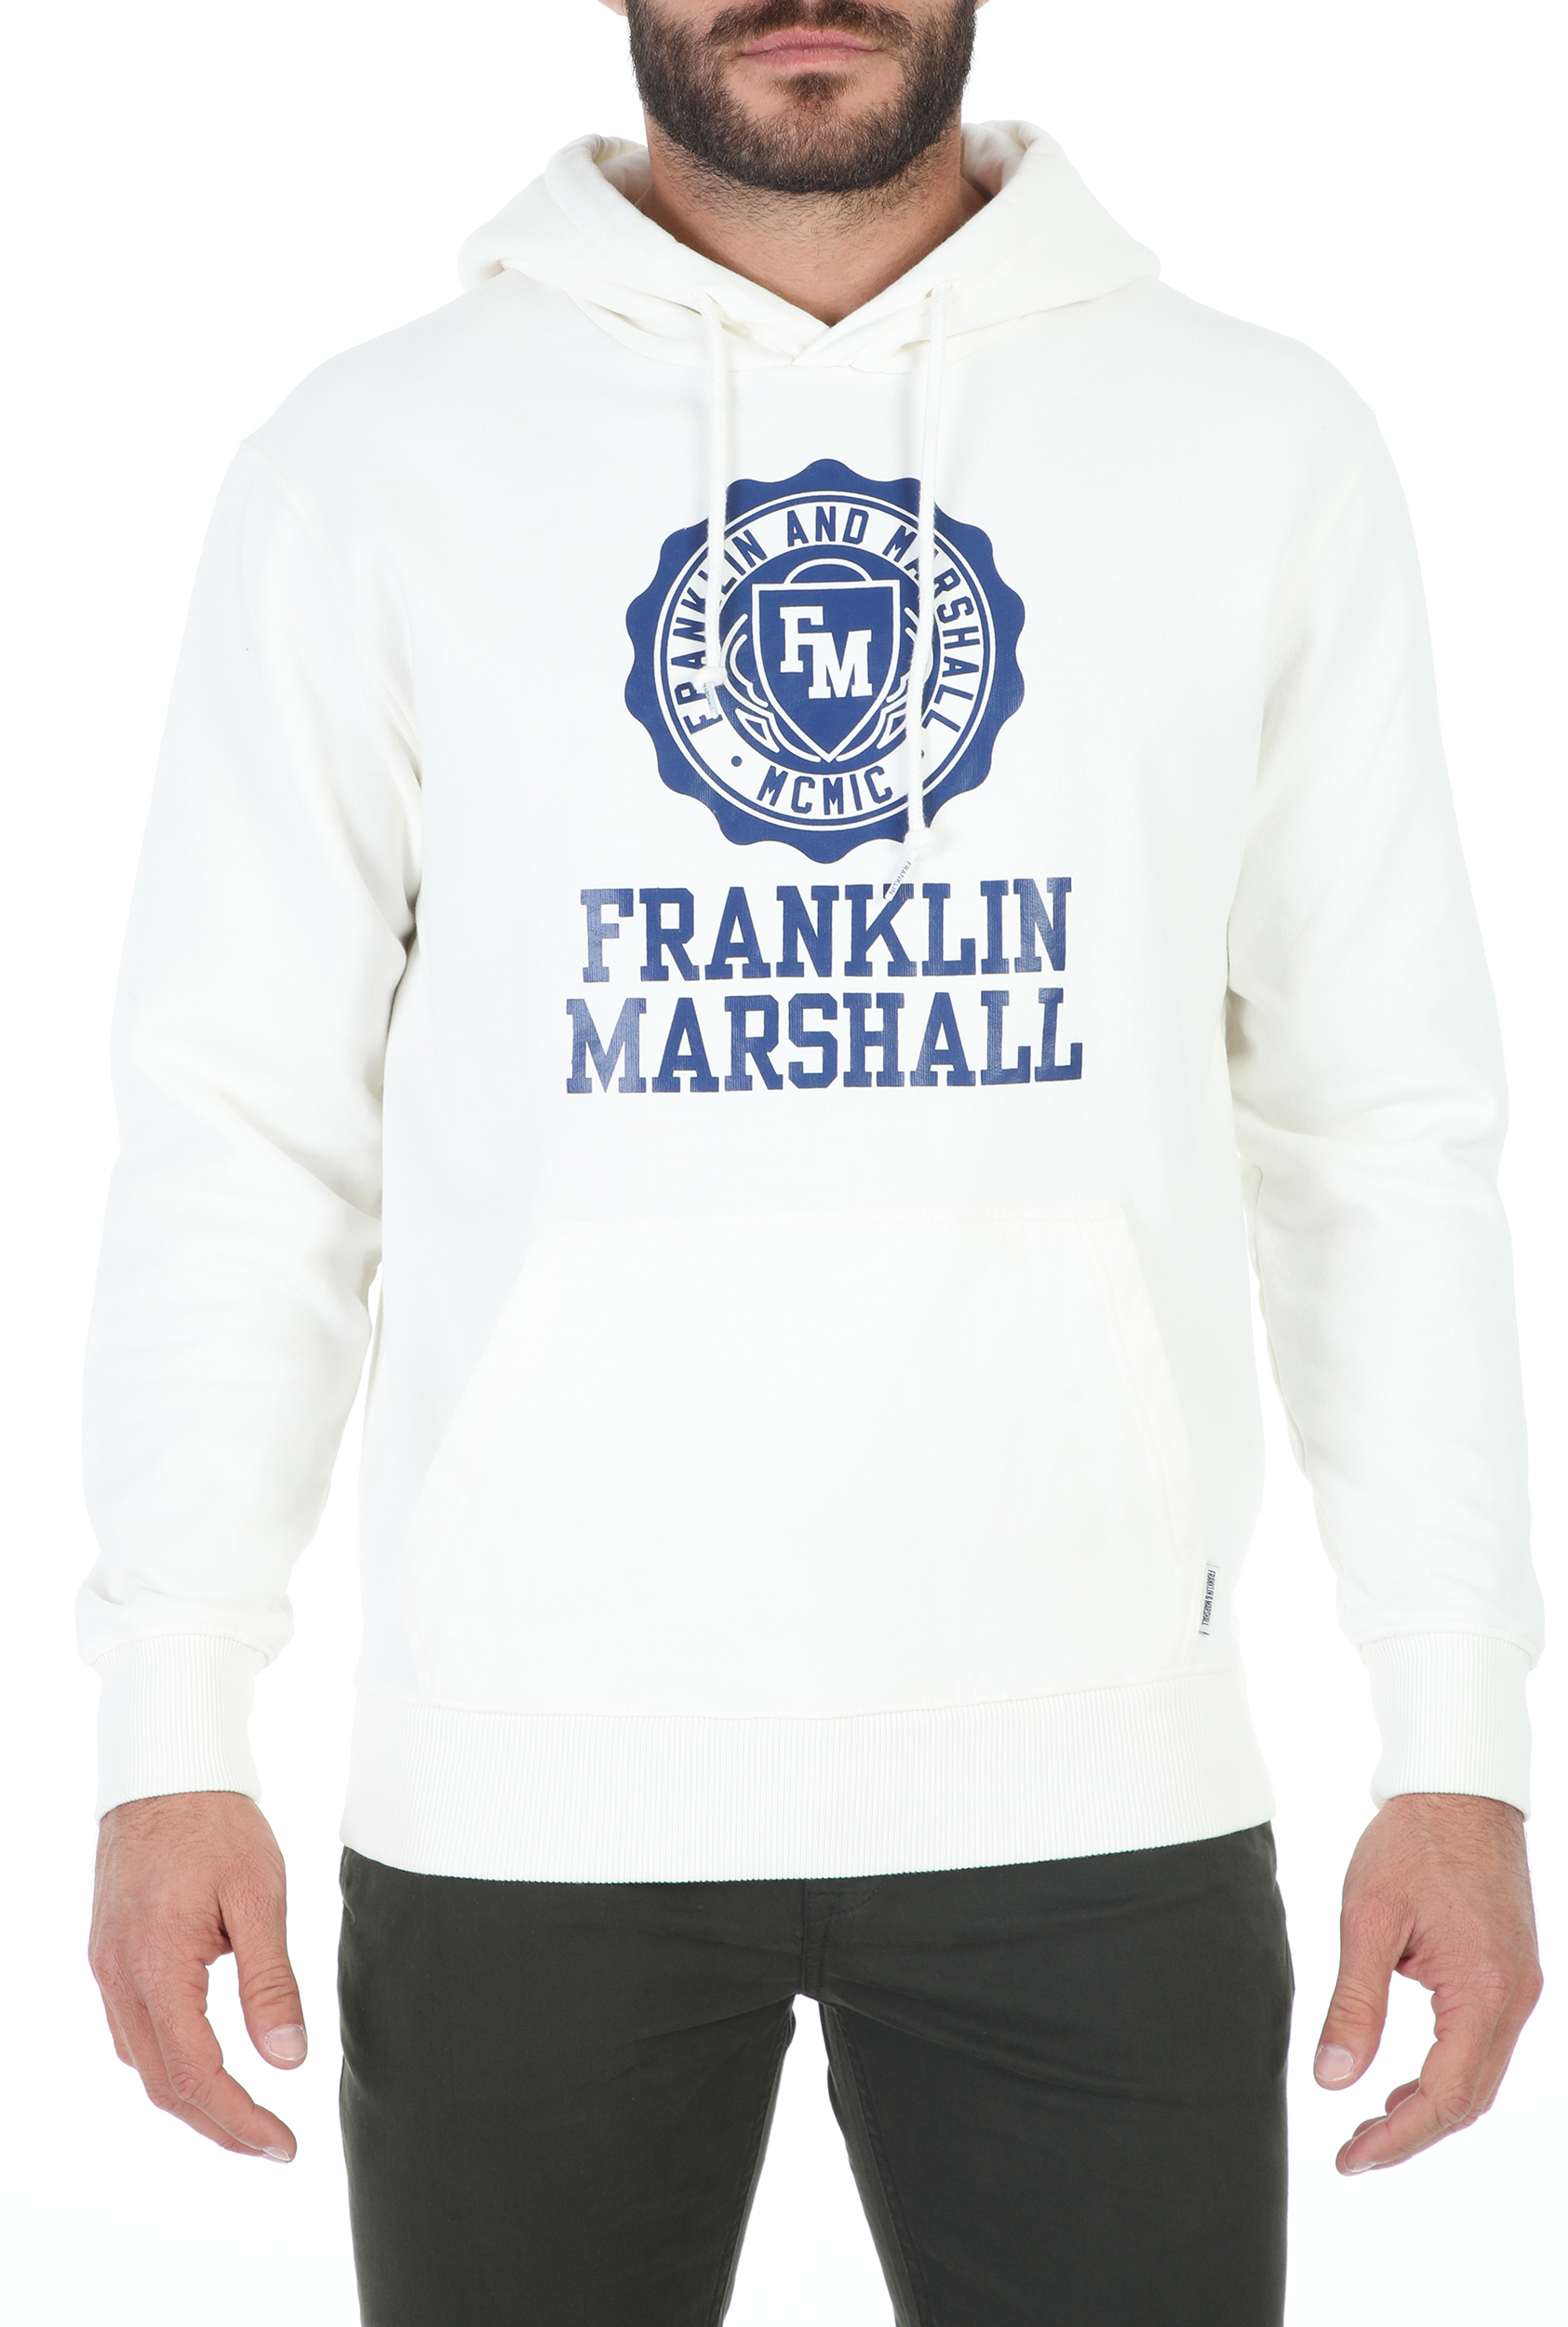 Ανδρικά/Ρούχα/Φούτερ/Μπλούζες FRANKLIN & MARSHALL - Ανδρική φούτερ μπλούζα FRANKLIN & MARSHALL BRUSHED COTTON FLEE λευκή